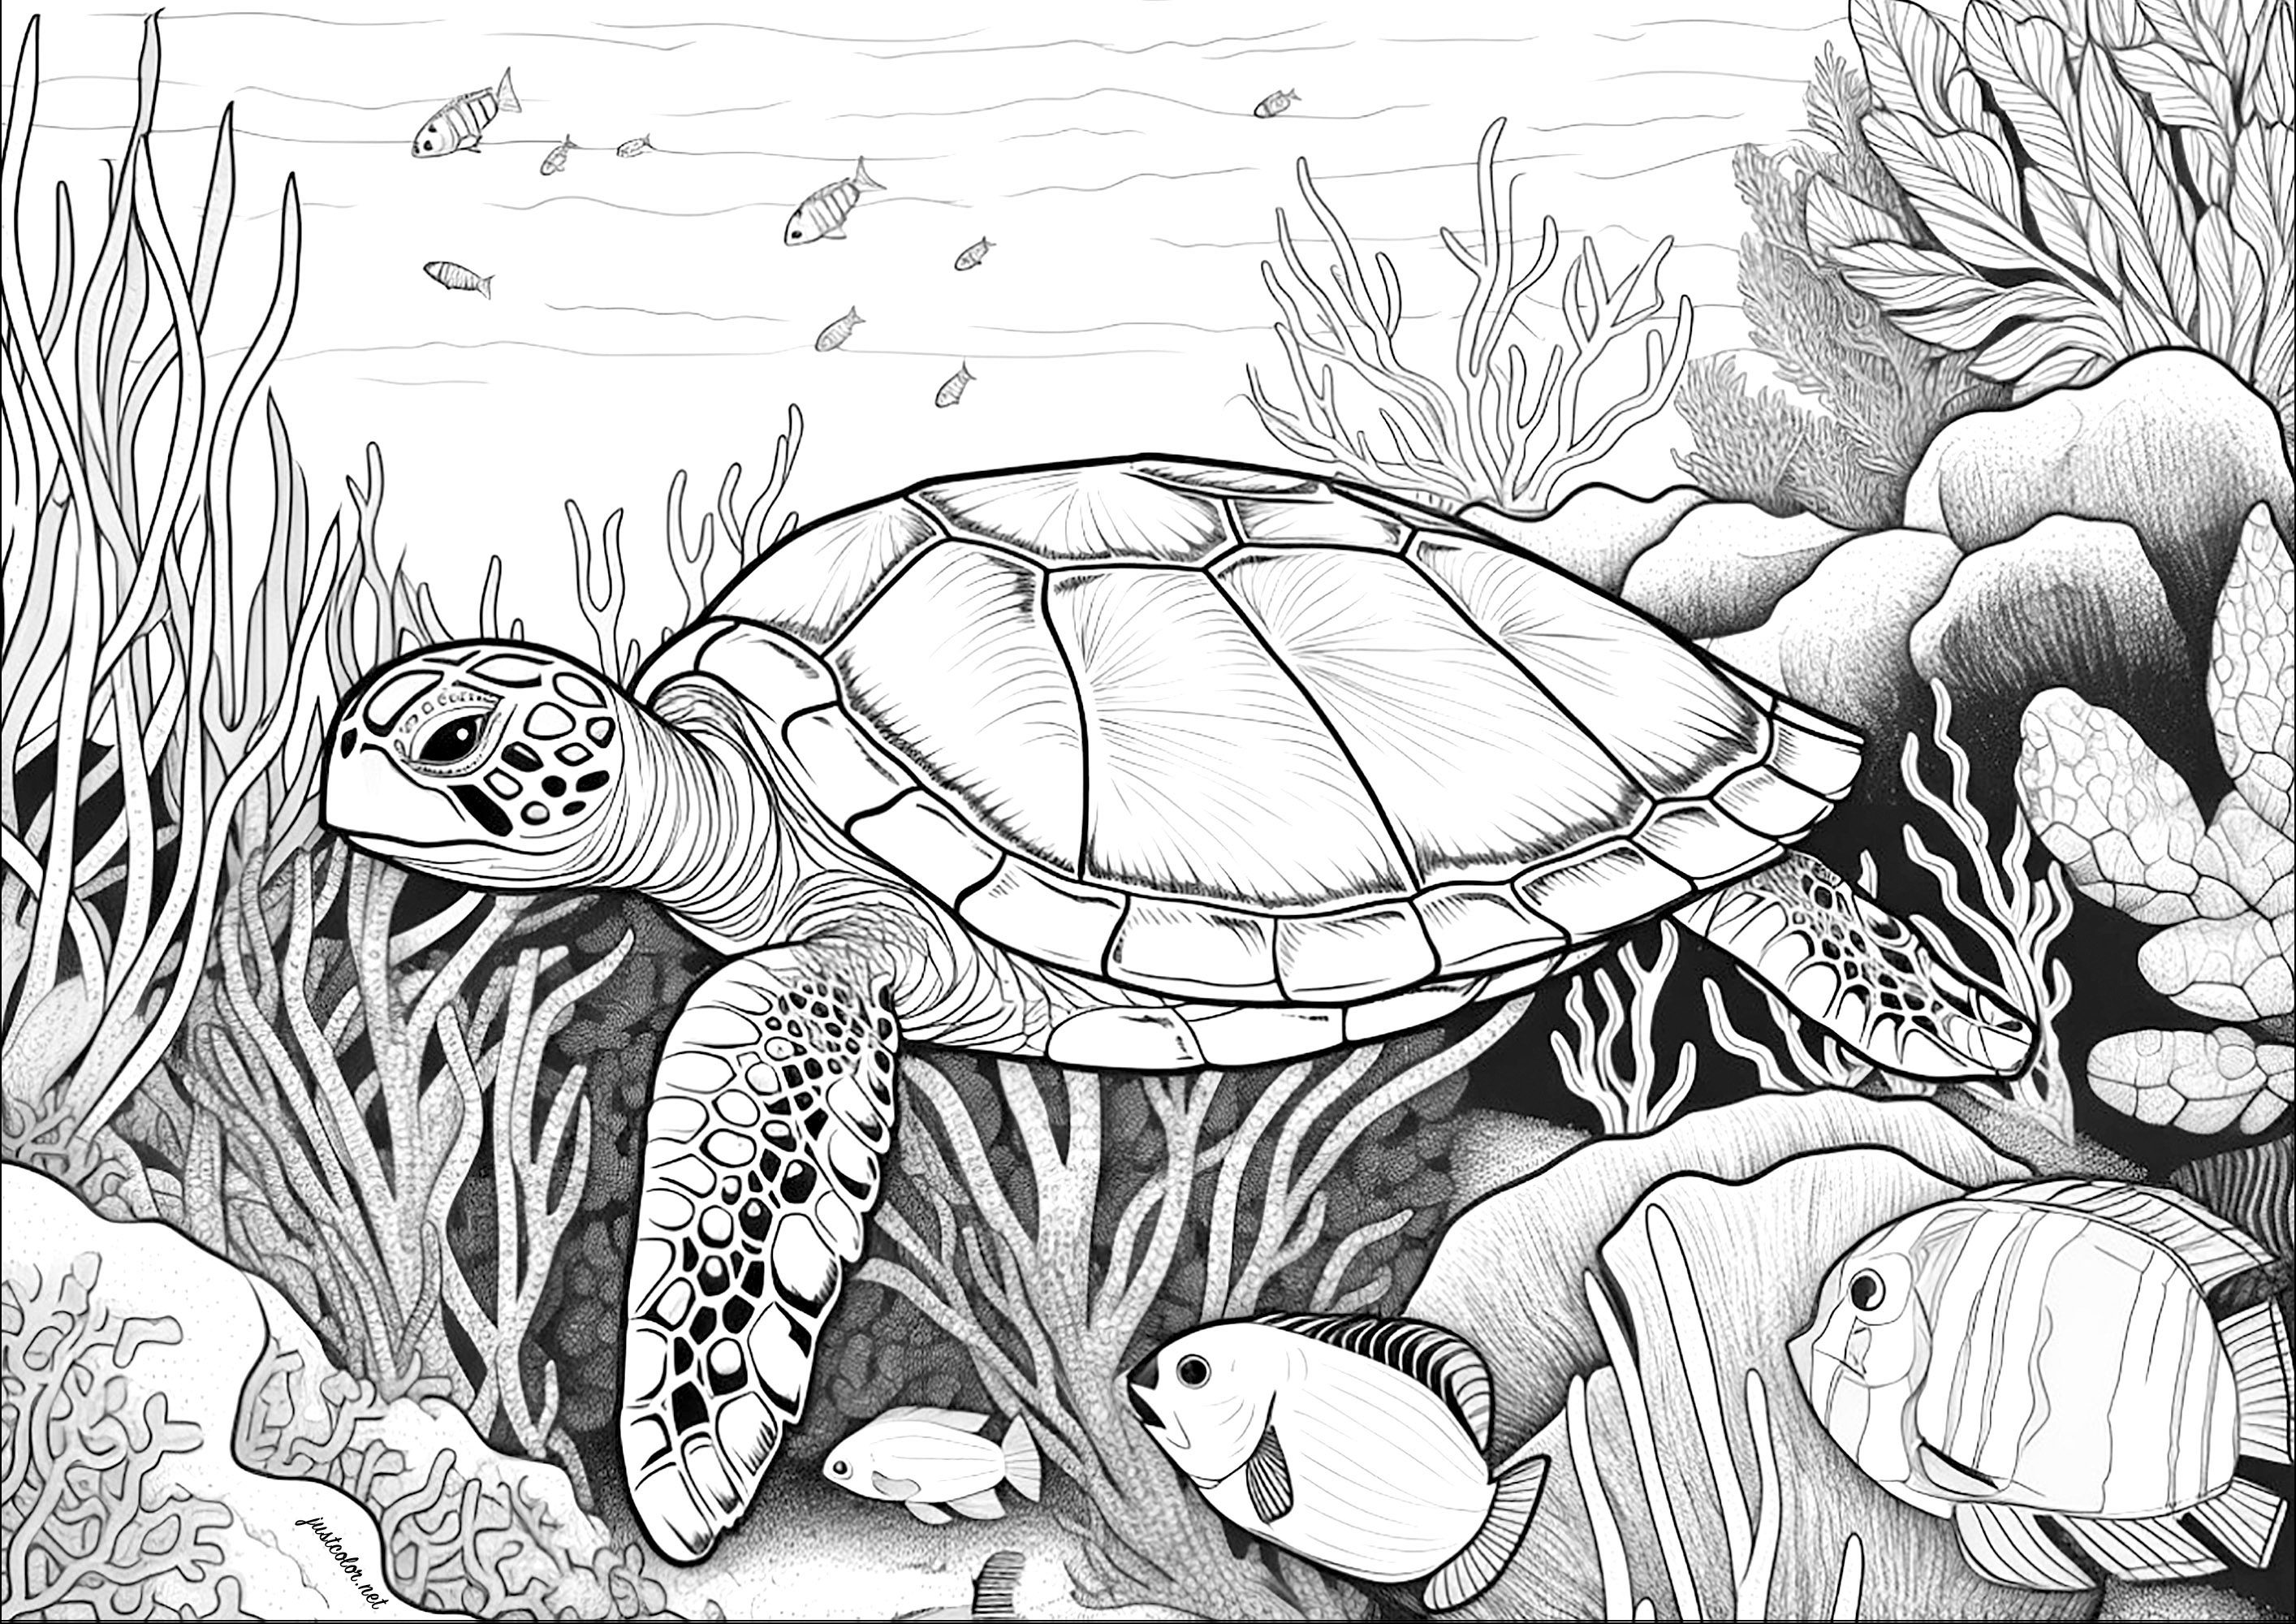 Tartaruga di grandi dimensioni che nuota sul fondale marino. Colorate anche i bei pesci, i coralli e le alghe